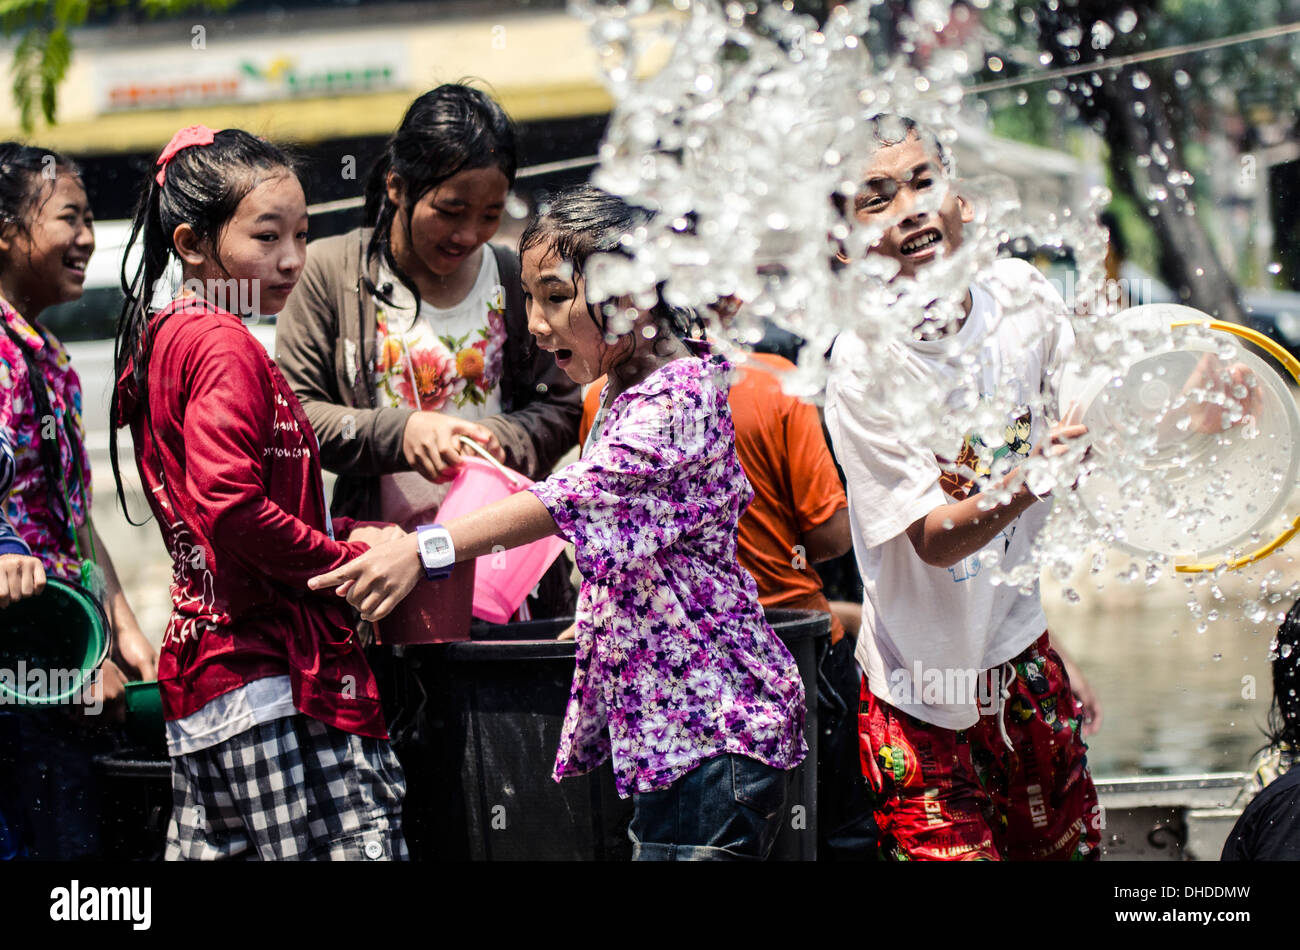 Les habitants de célébrer le Nouvel An Thaï en jetant de l'eau à l'autre, l'eau de Songkran festival, Chiang Mai, Thaïlande, Asie du Sud-Est Banque D'Images